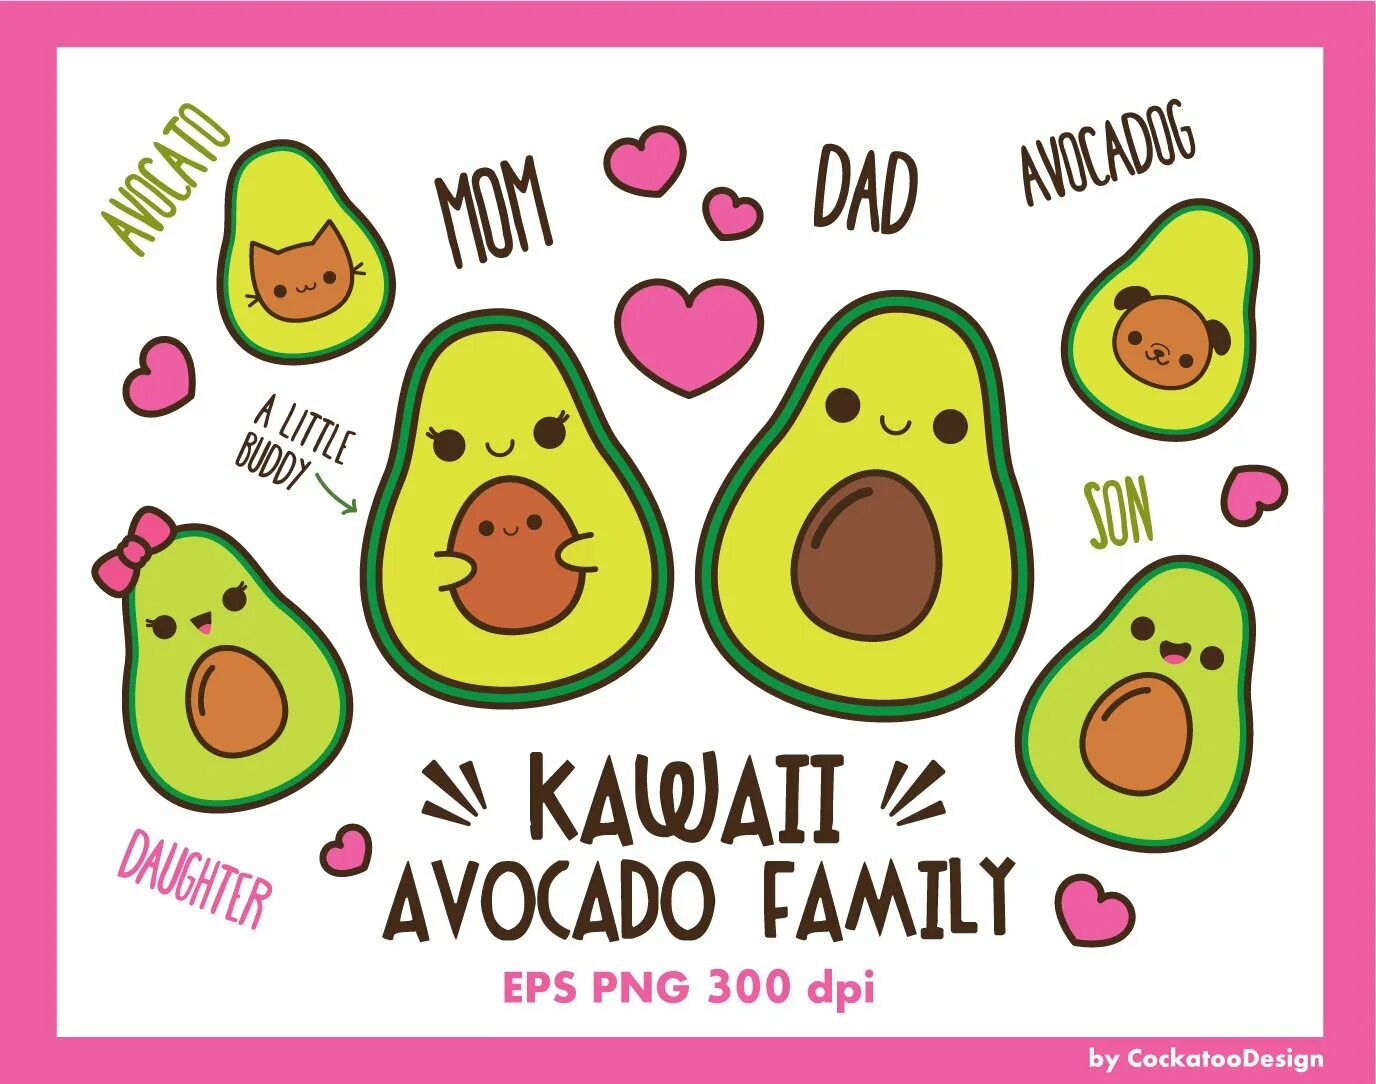 For avocado stickers #1